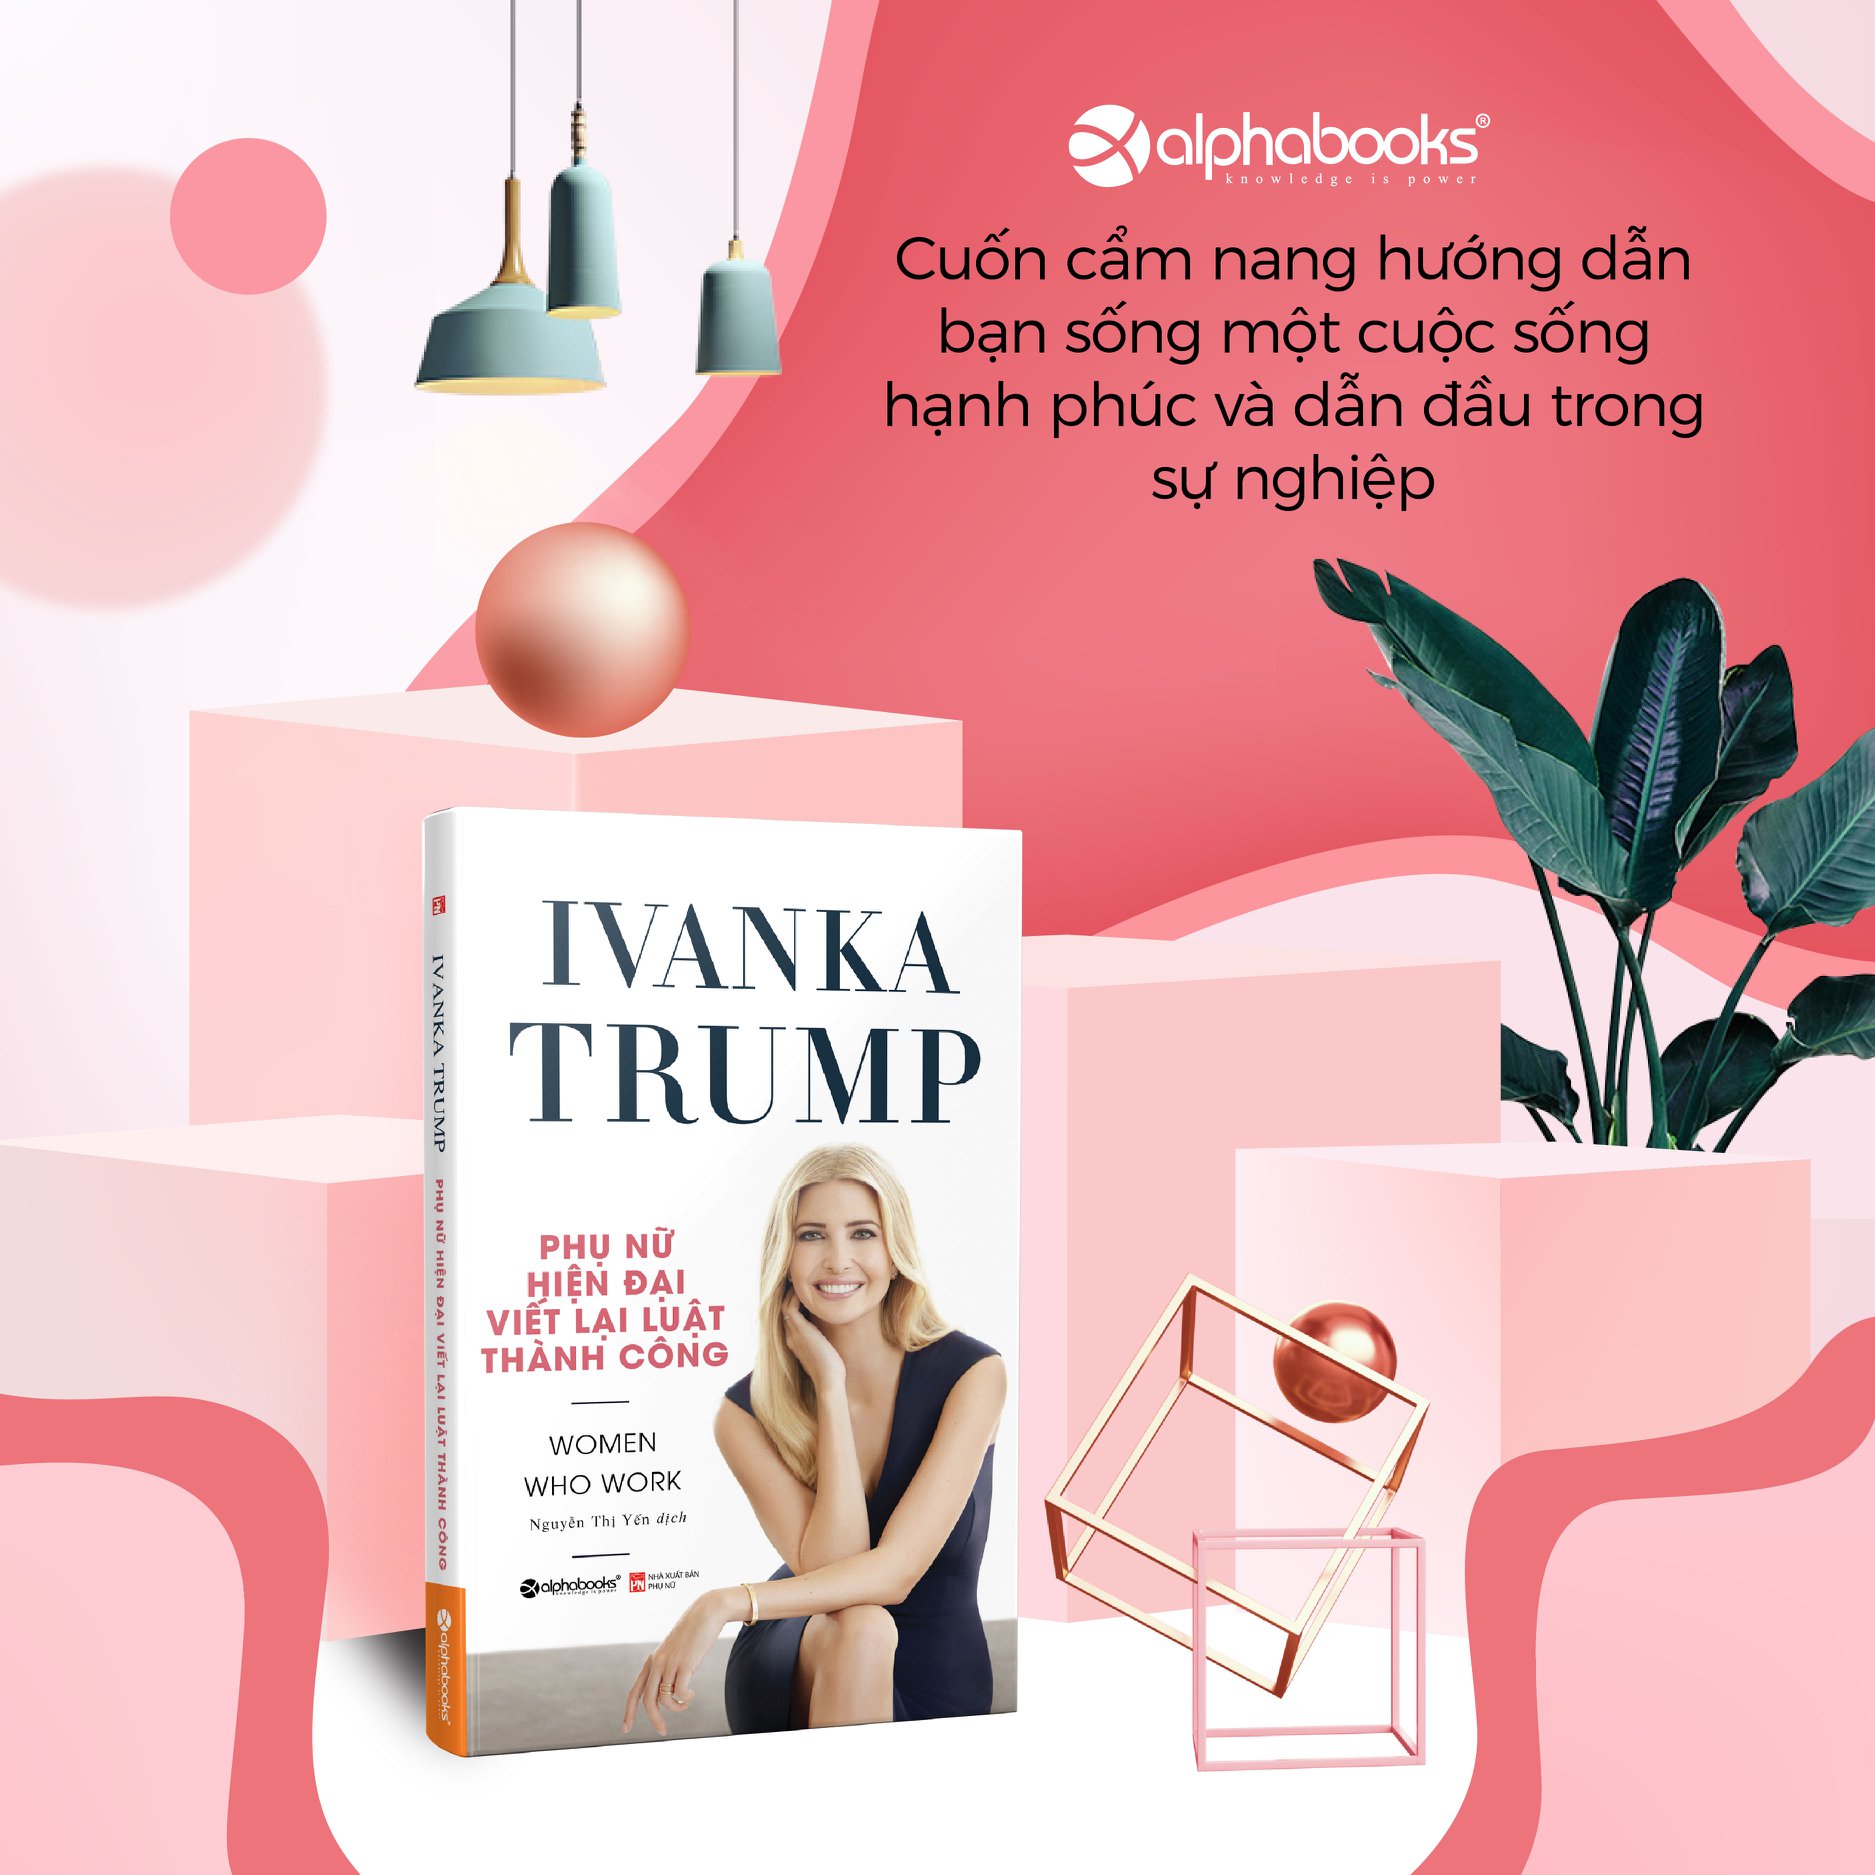 Trạm Đọc | Ivanka Trump - Phụ Nữ Hiện Đại Viết Lại Luật Thành Công